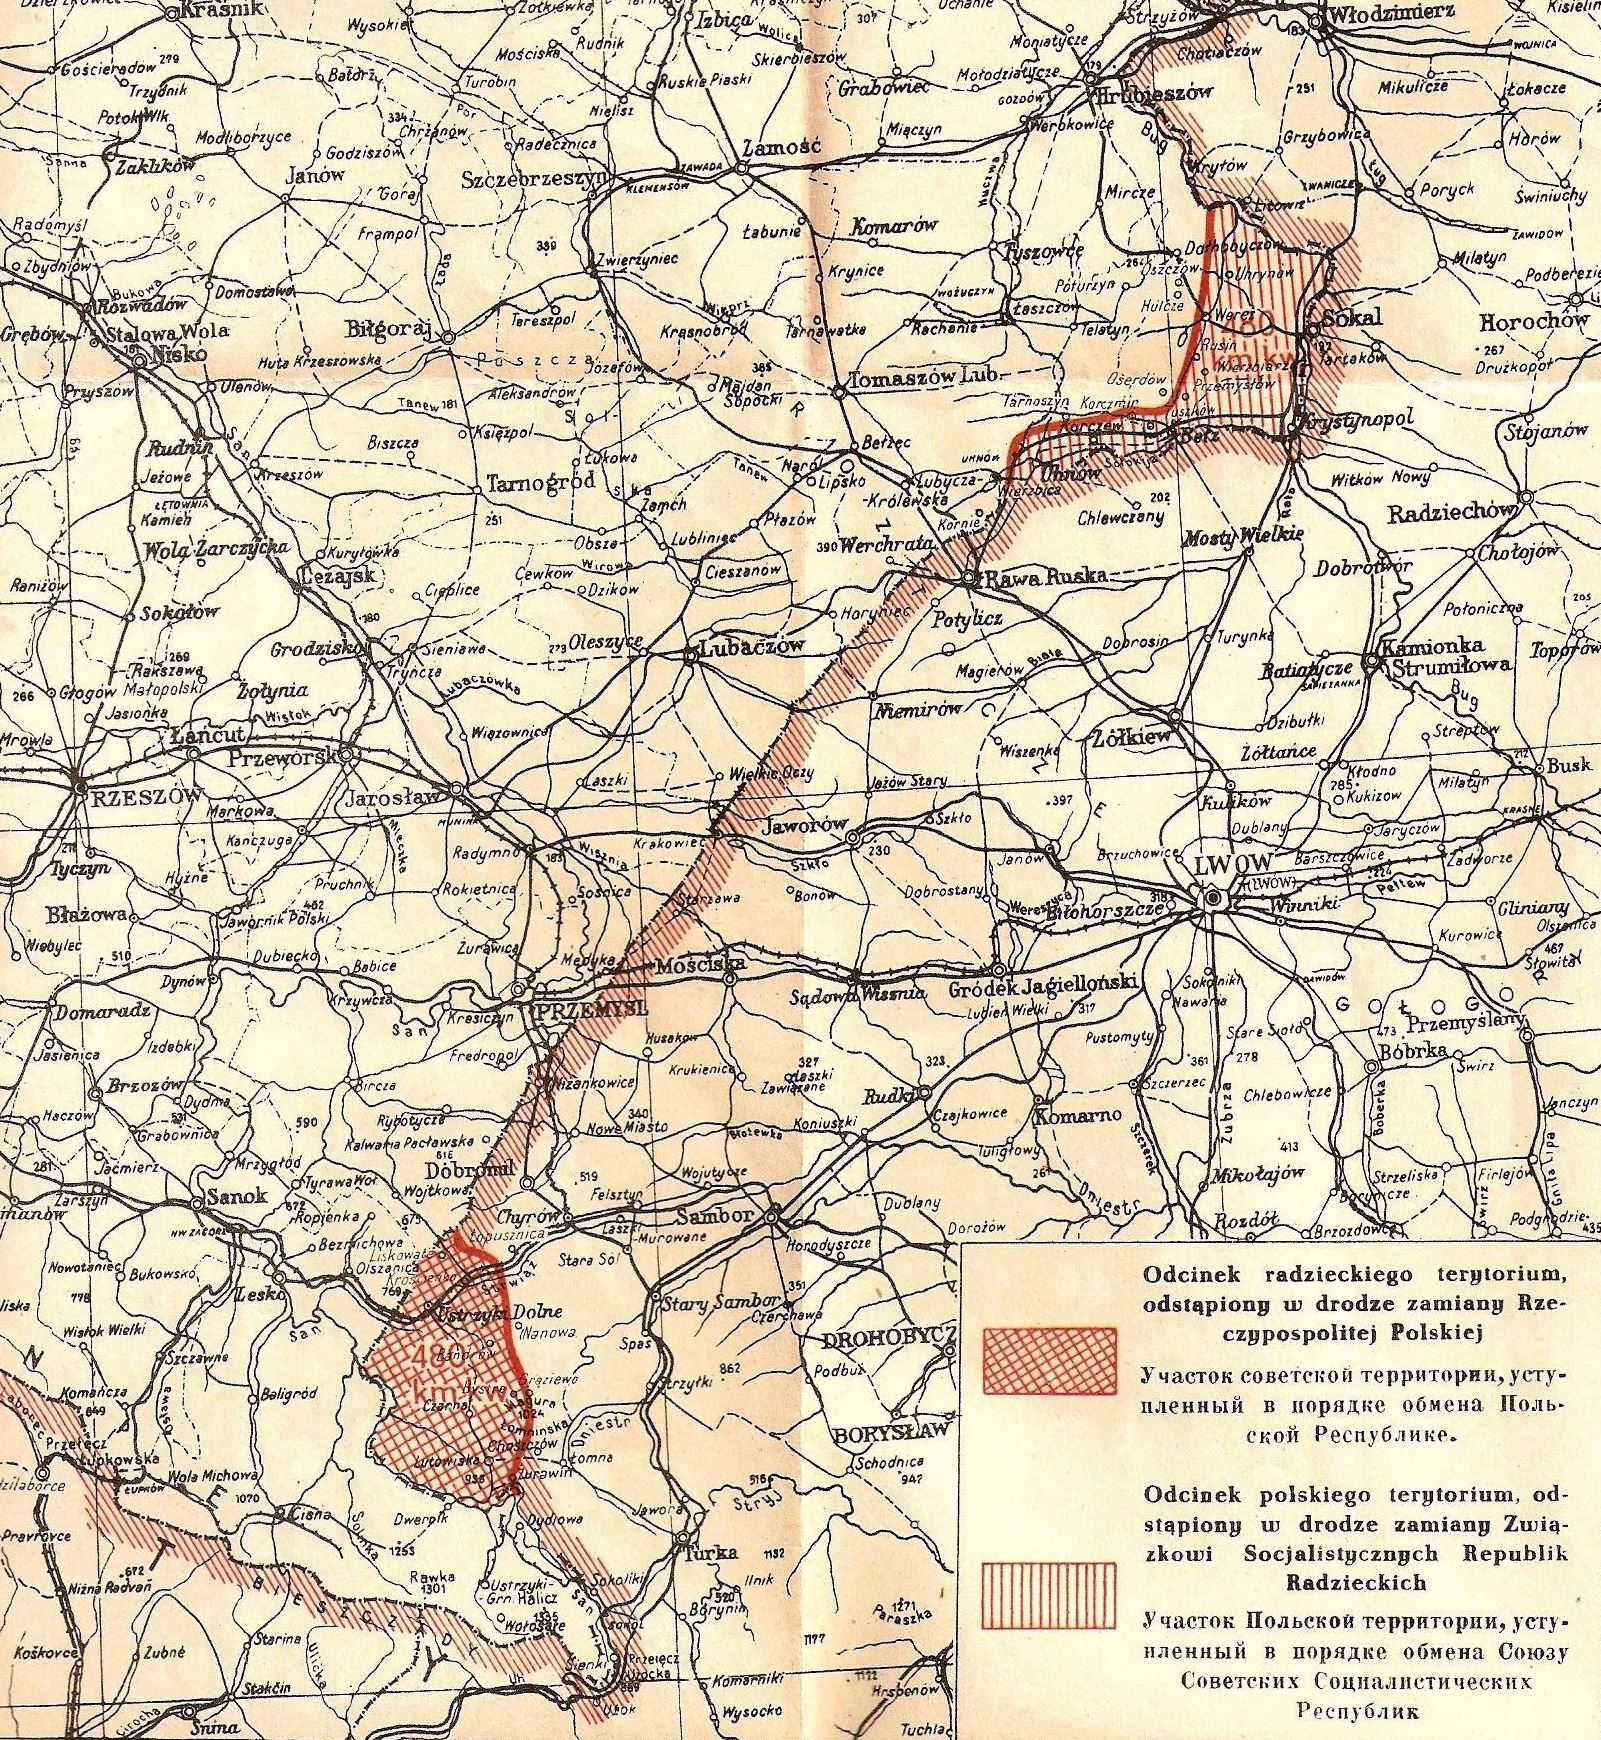 70 lat temu podpisano Umowę o zmianie granic z 15 lutego 1951 r. ZSRS przejął ważny strategicznie węzeł kolejowy ...